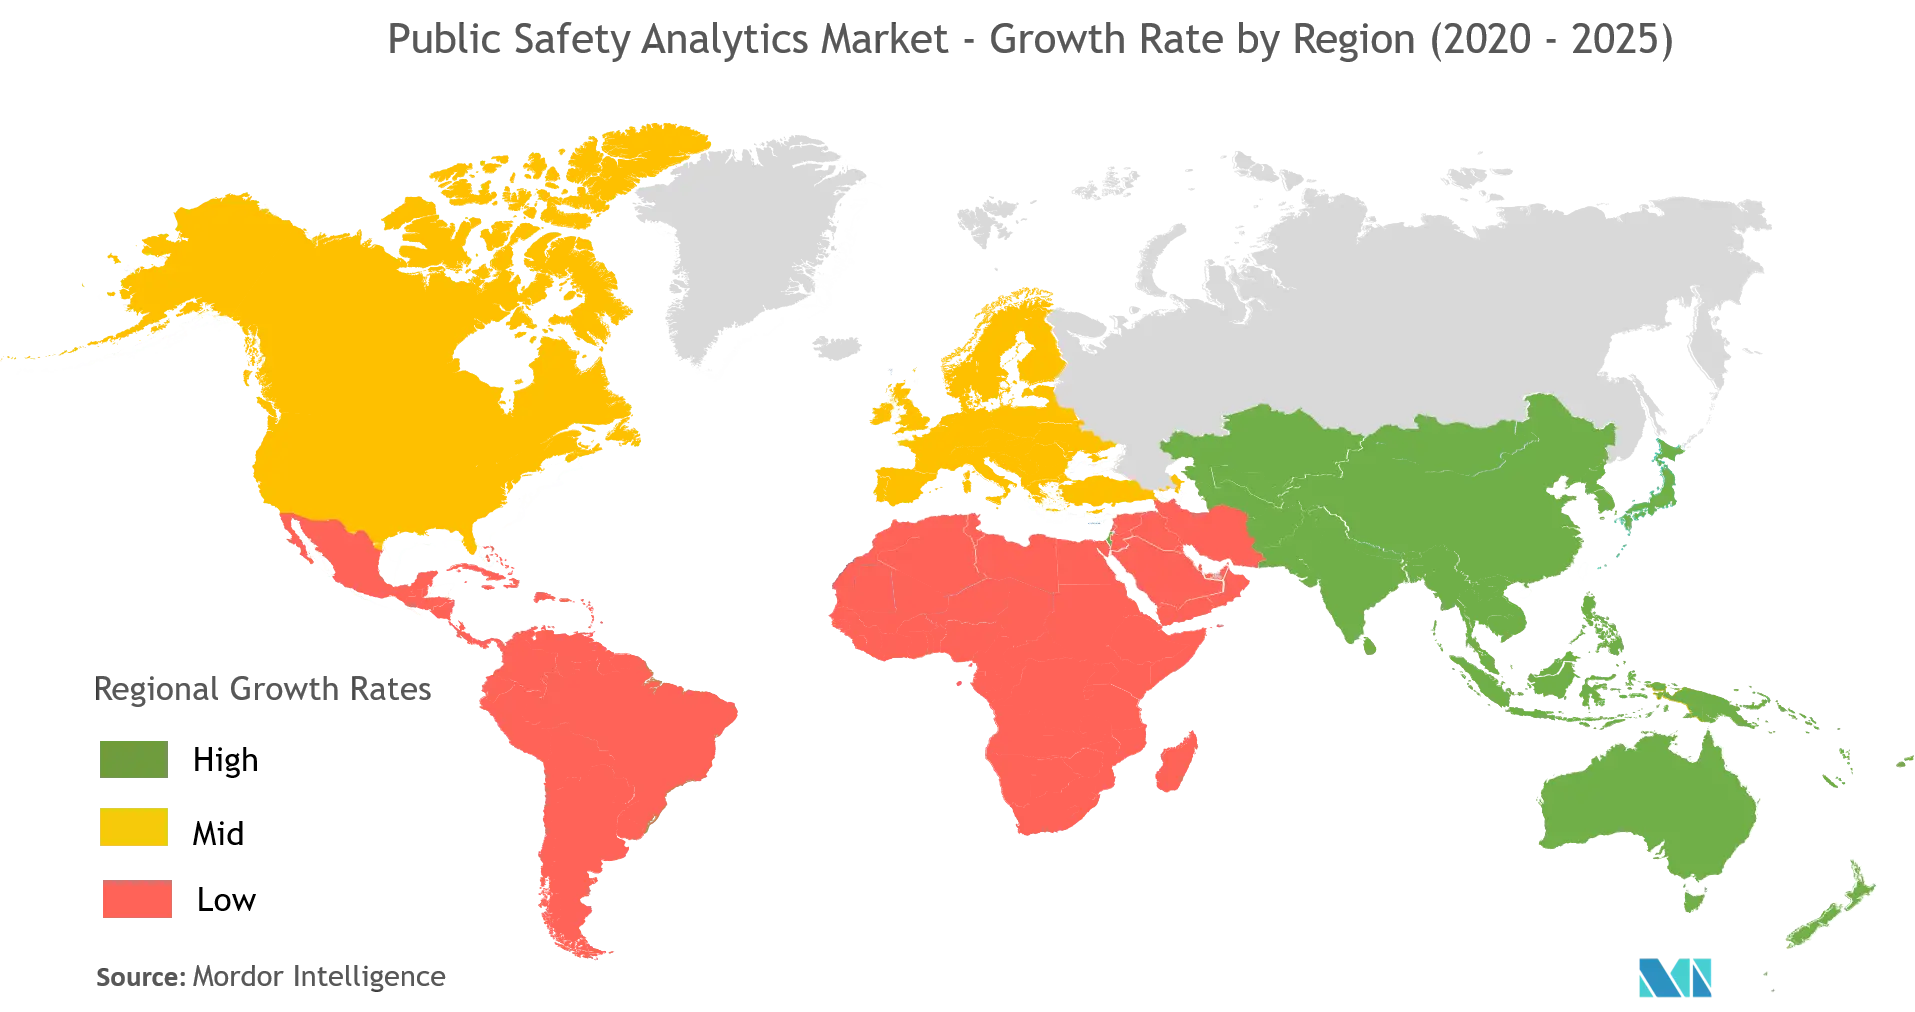 Public Safety Analytics Market Growth